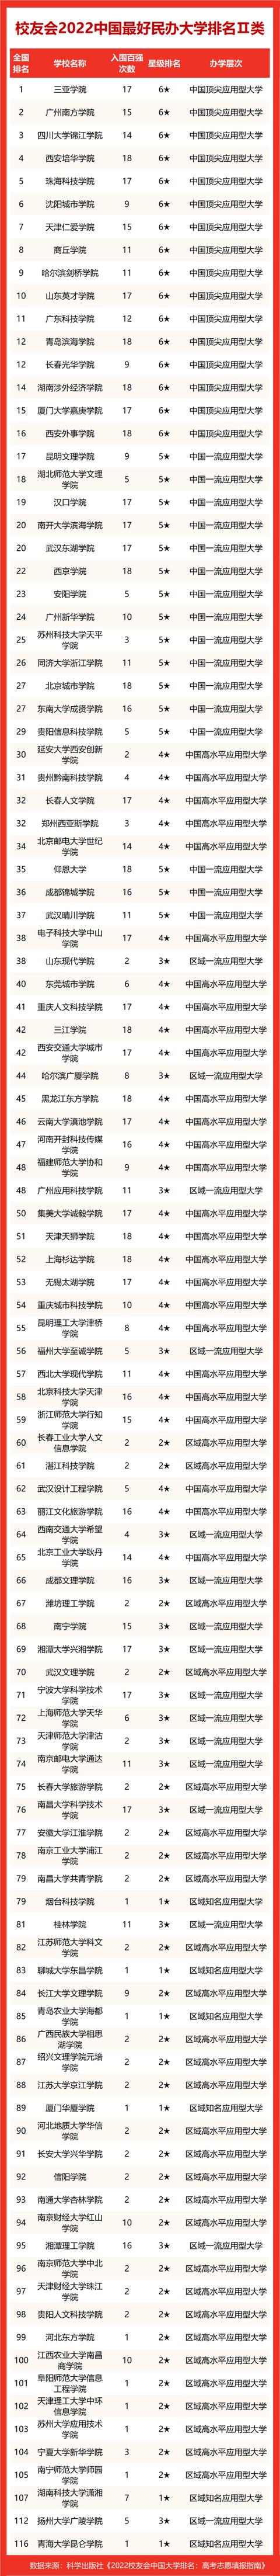 中国艺术学院最新排名(艺术学院实力排名)